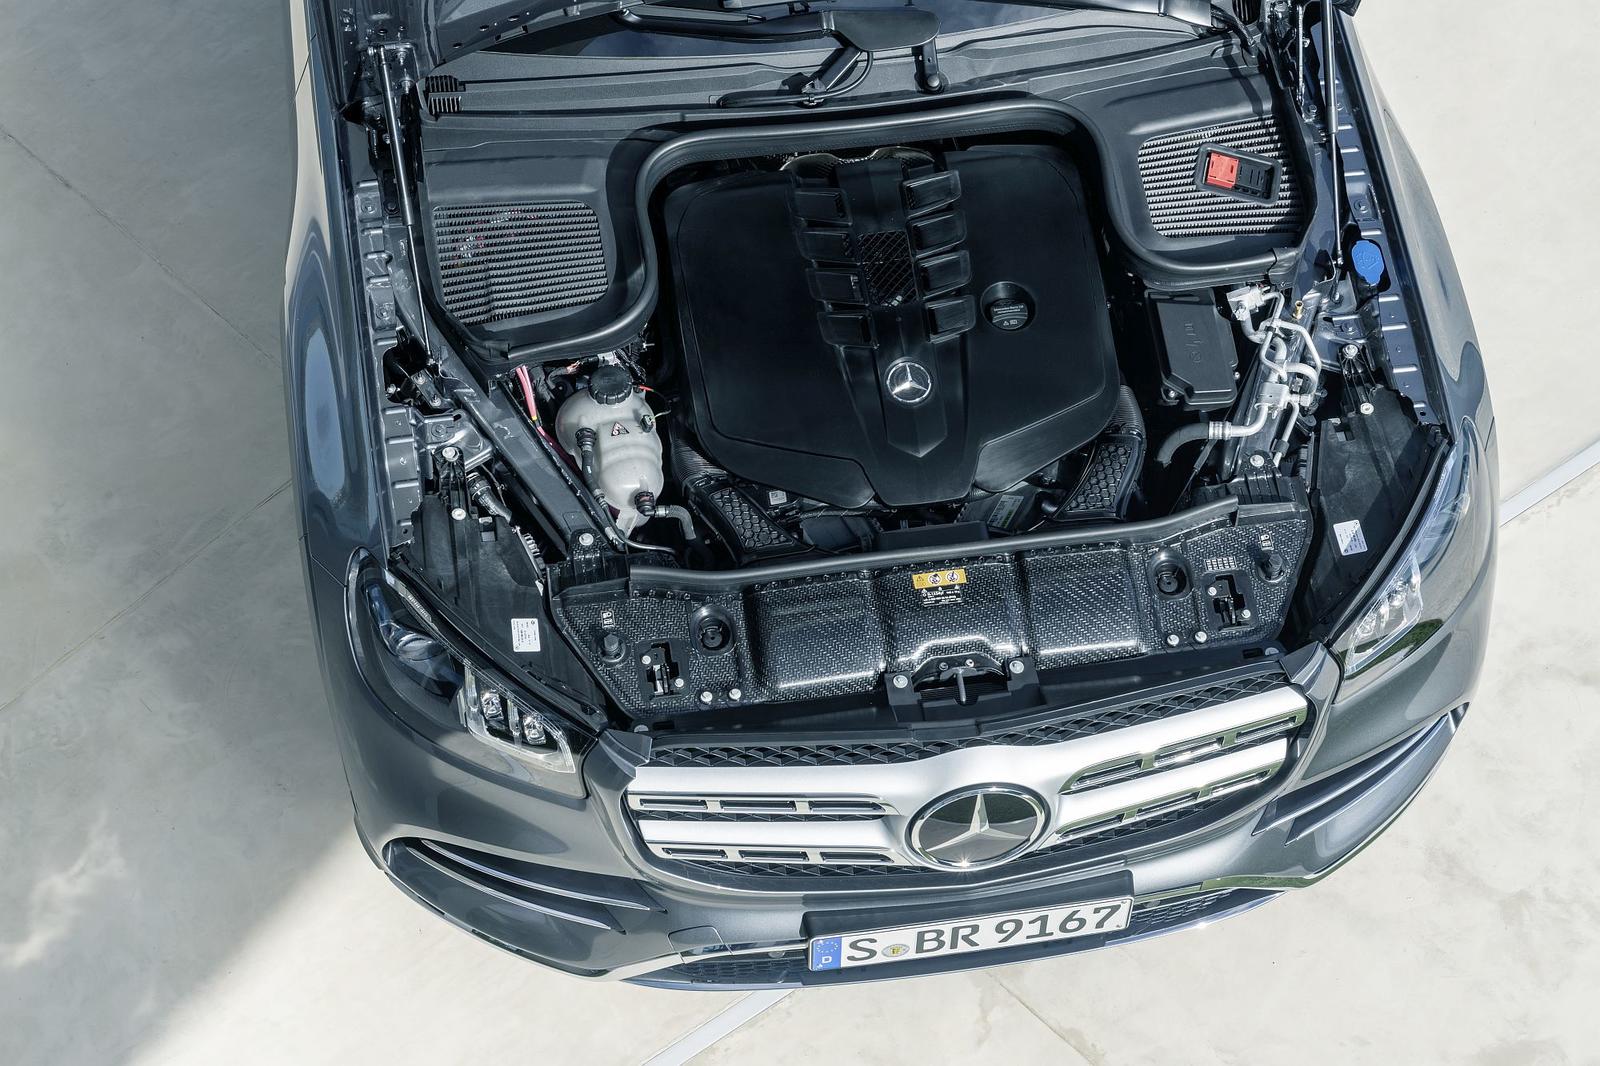 Der neue Mercedes-Benz GLS: Die S-Klasse unter den SUV

The new Mercedes-Benz GLS: The S-Class of SUVs